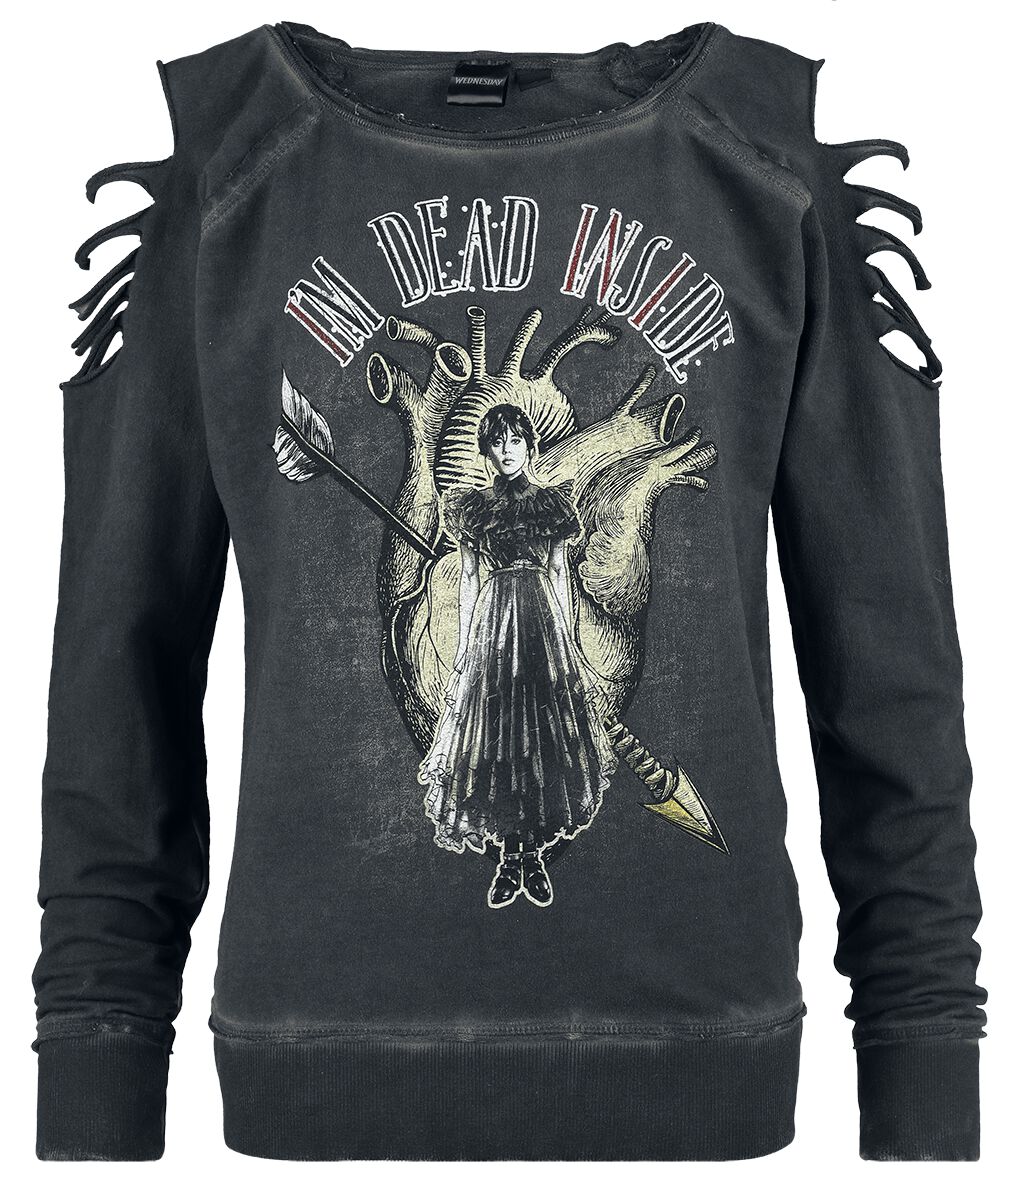 Wednesday Sweatshirt - I`m dead inside - S bis XXL - für Damen - Größe M - dunkelgrau  - EMP exklusives Merchandise!